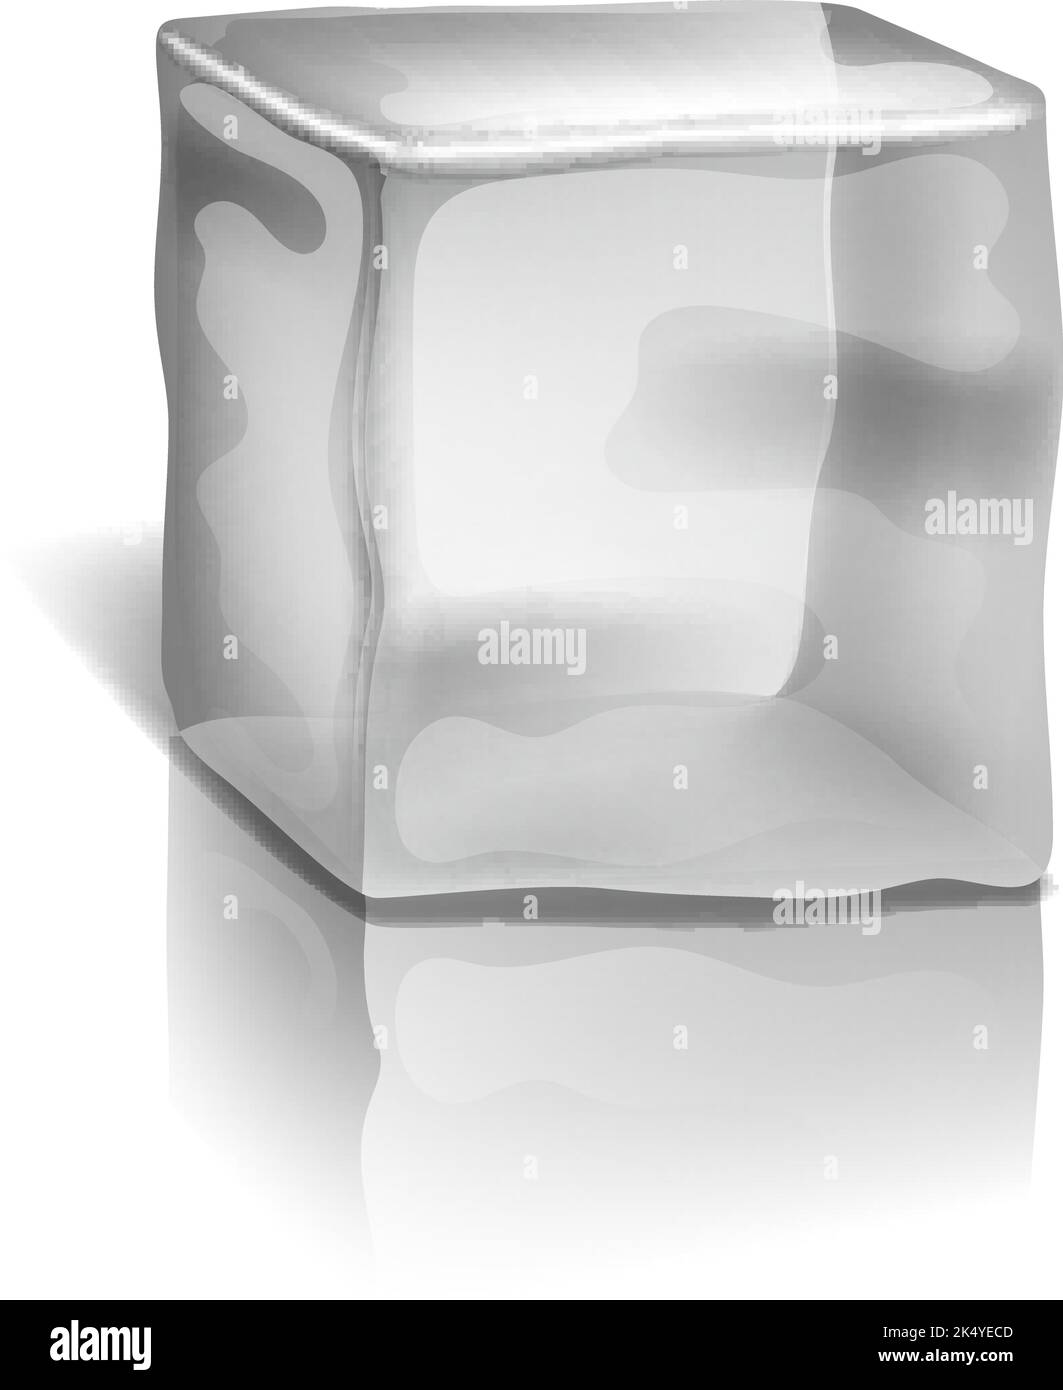 Forme de glace. Eau gelée transparente. Cube en verre Illustration de Vecteur